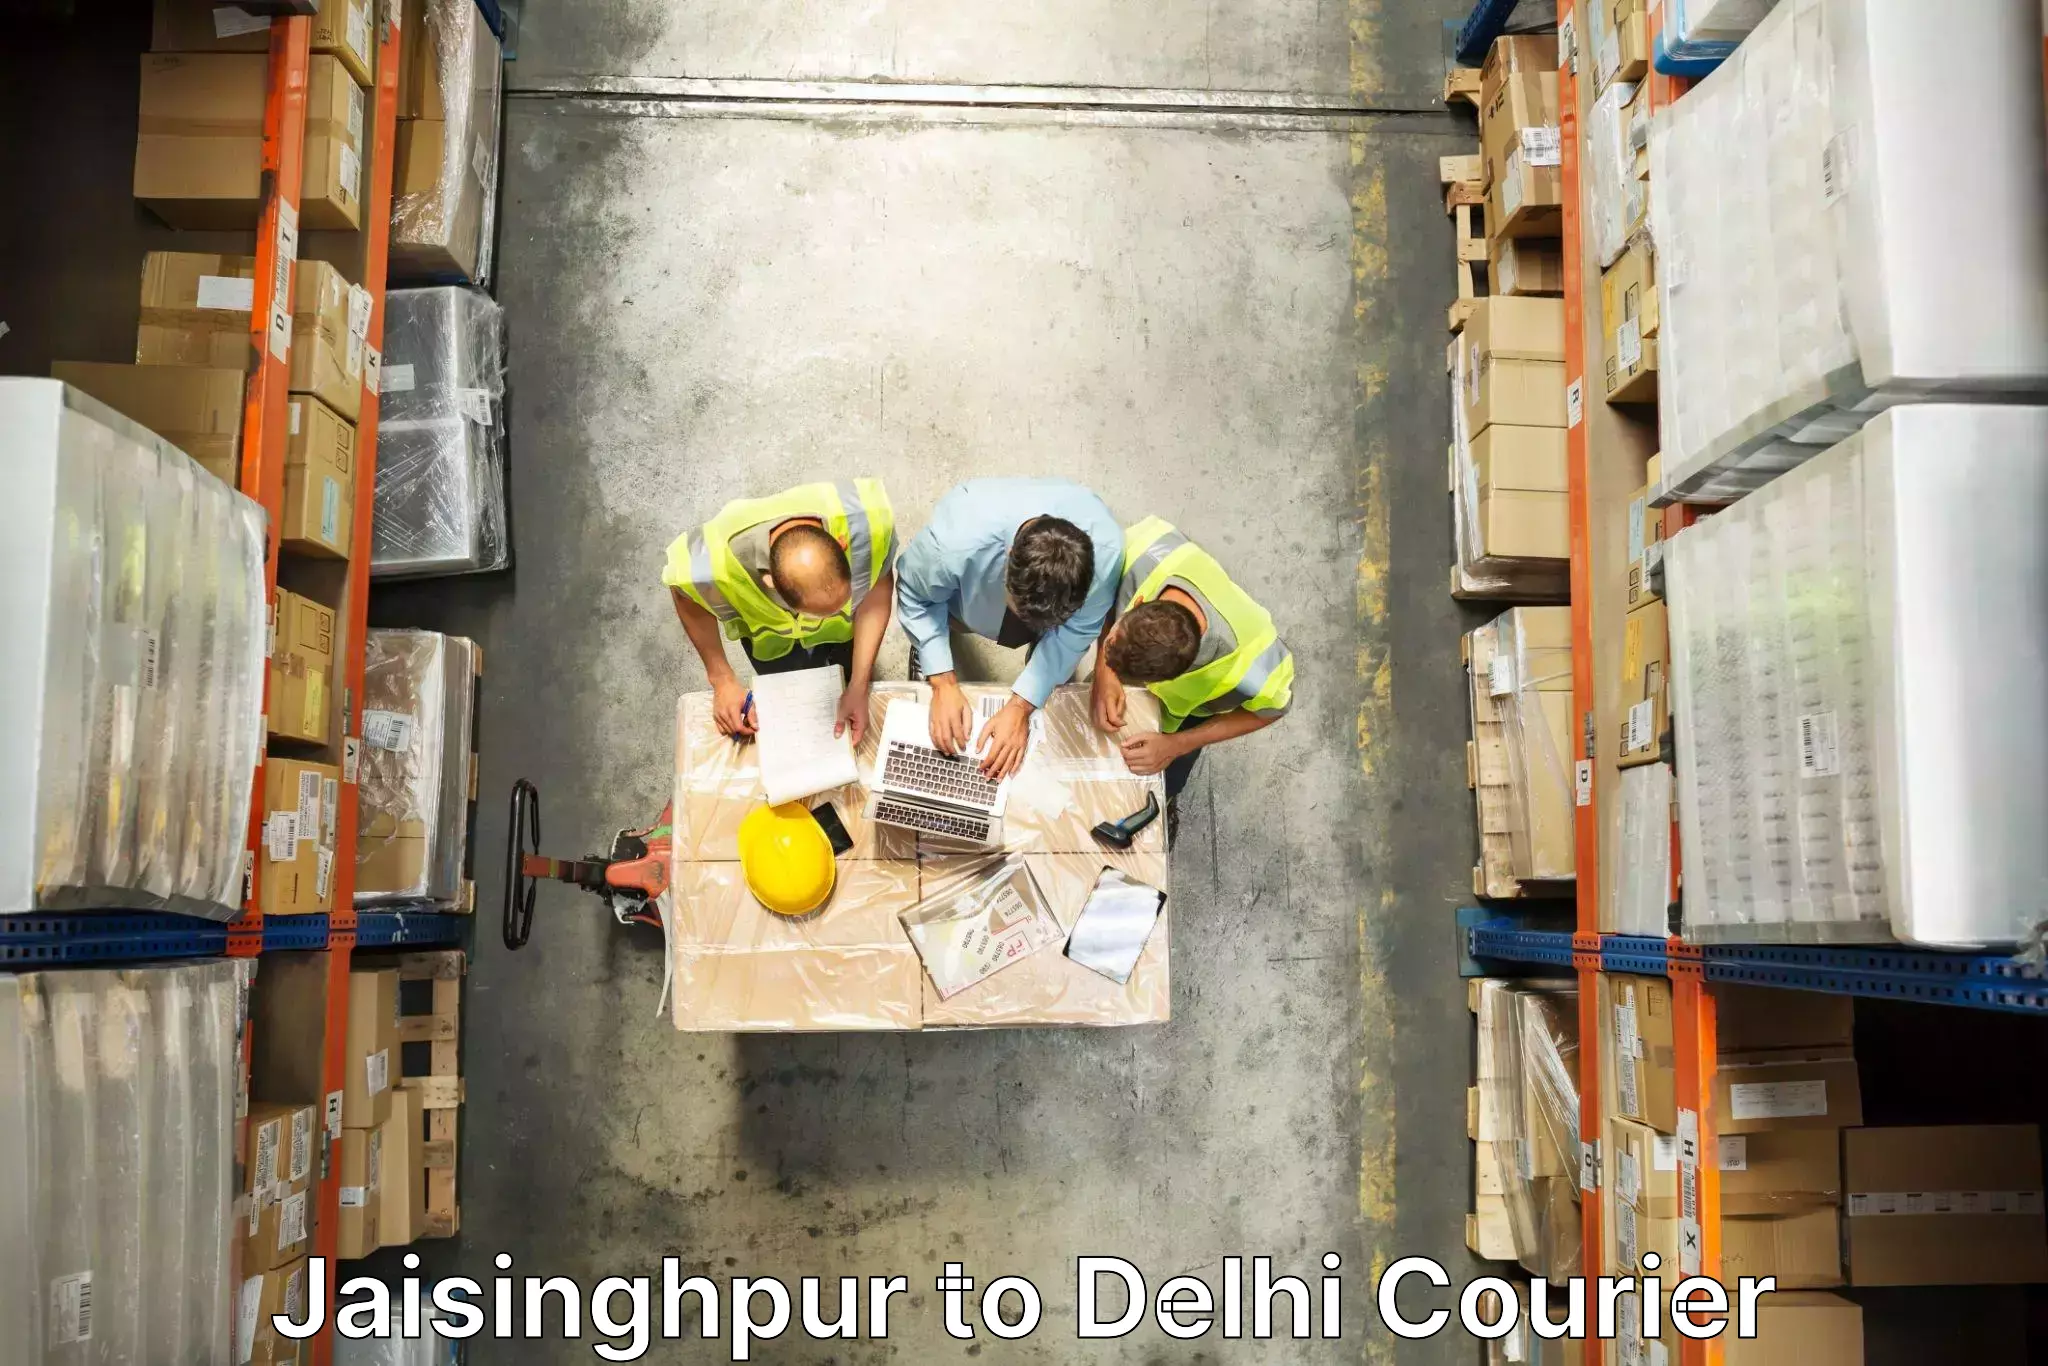 Household goods transport service Jaisinghpur to IIT Delhi